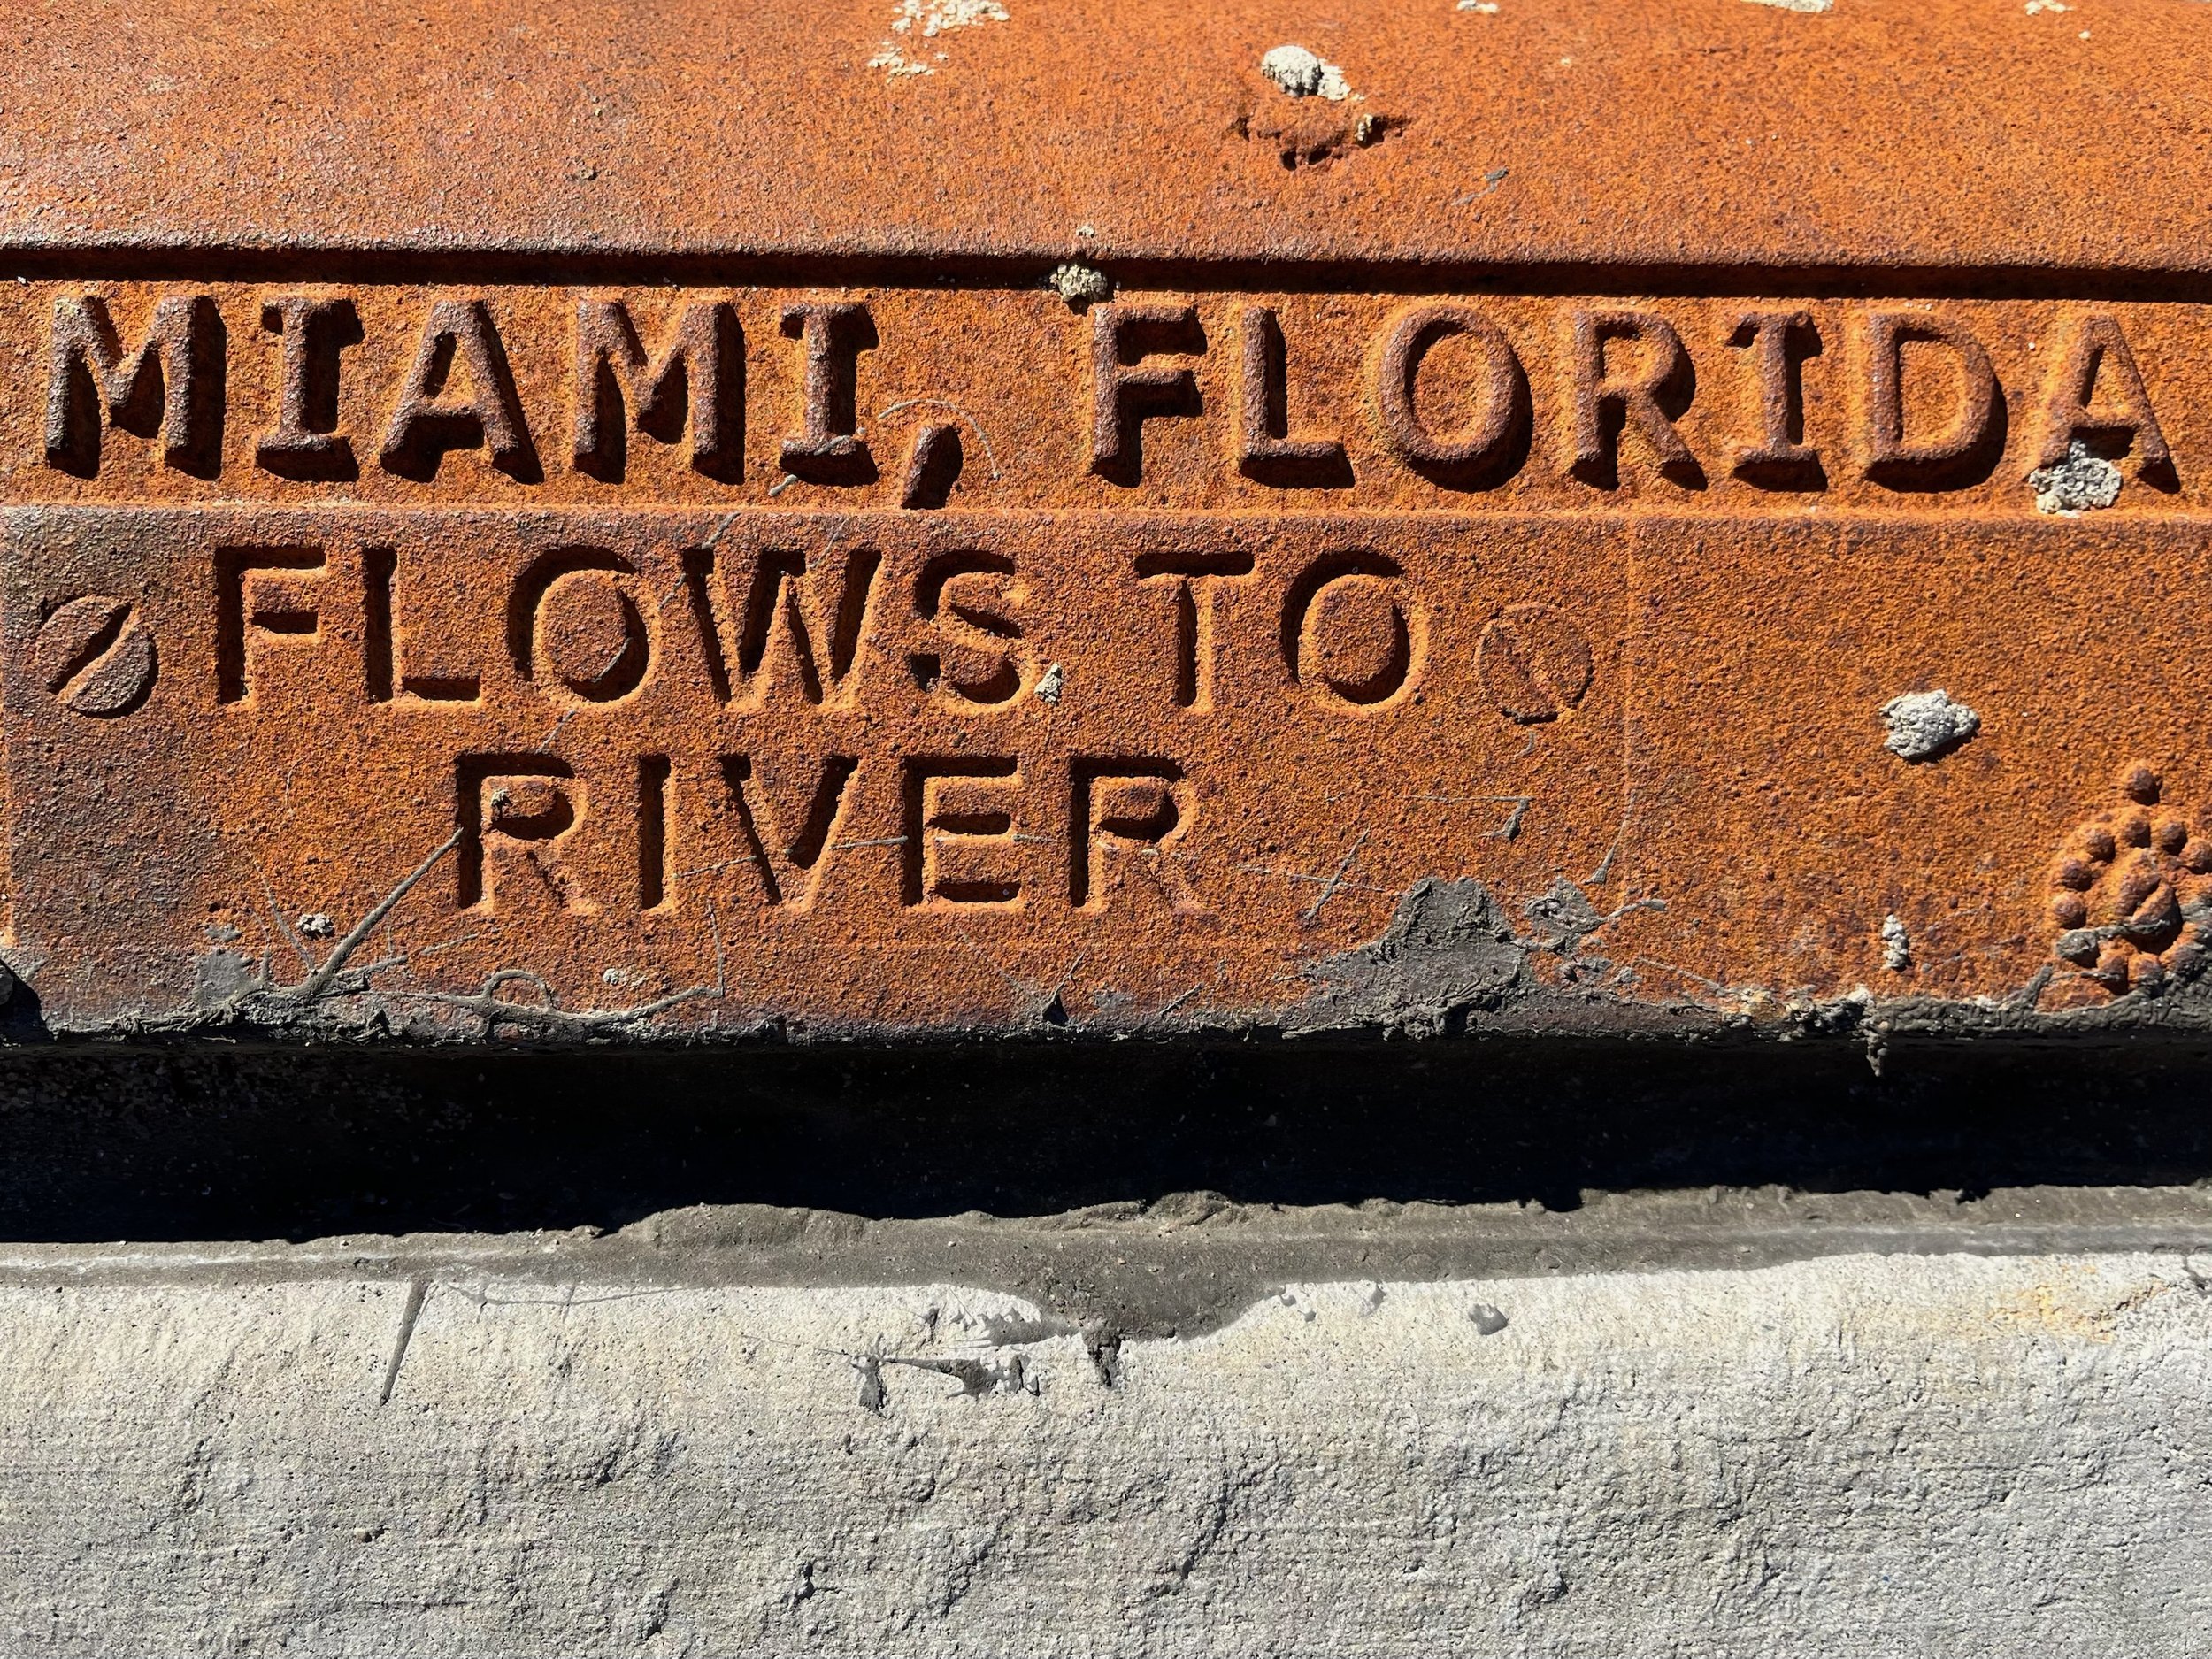 Flows to river (Miami)